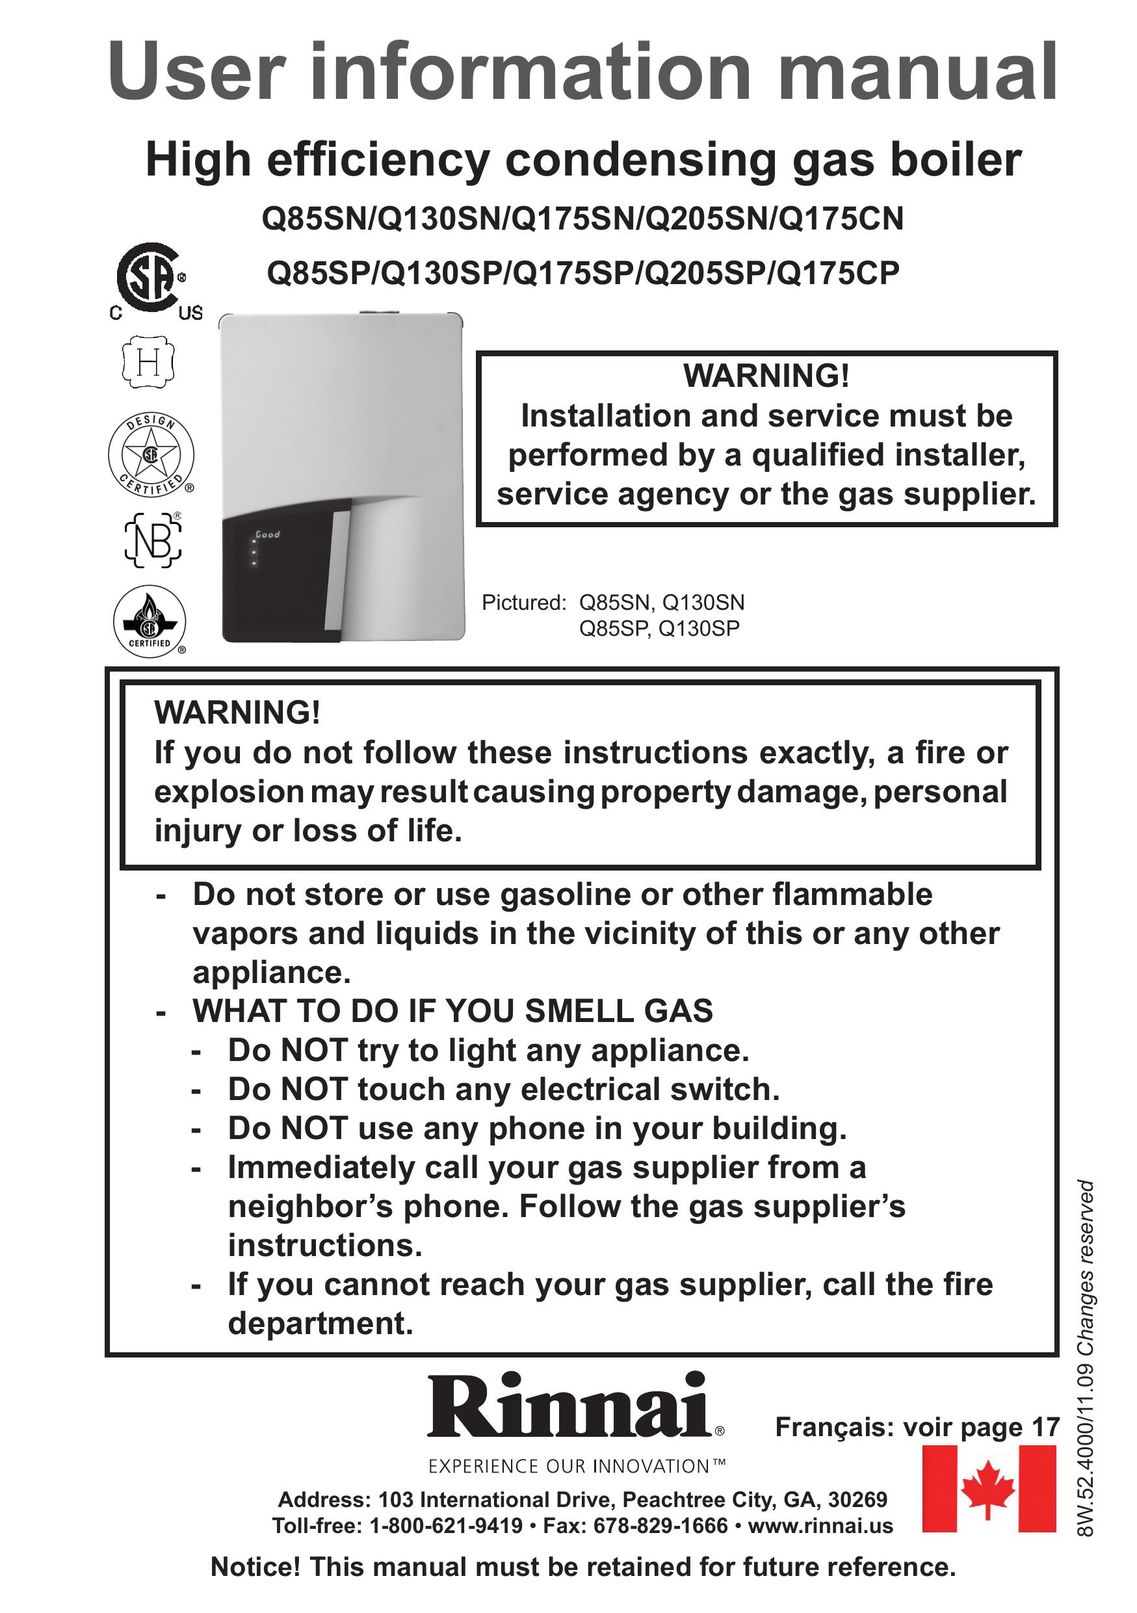 Rinnai Q175CN Boiler User Manual